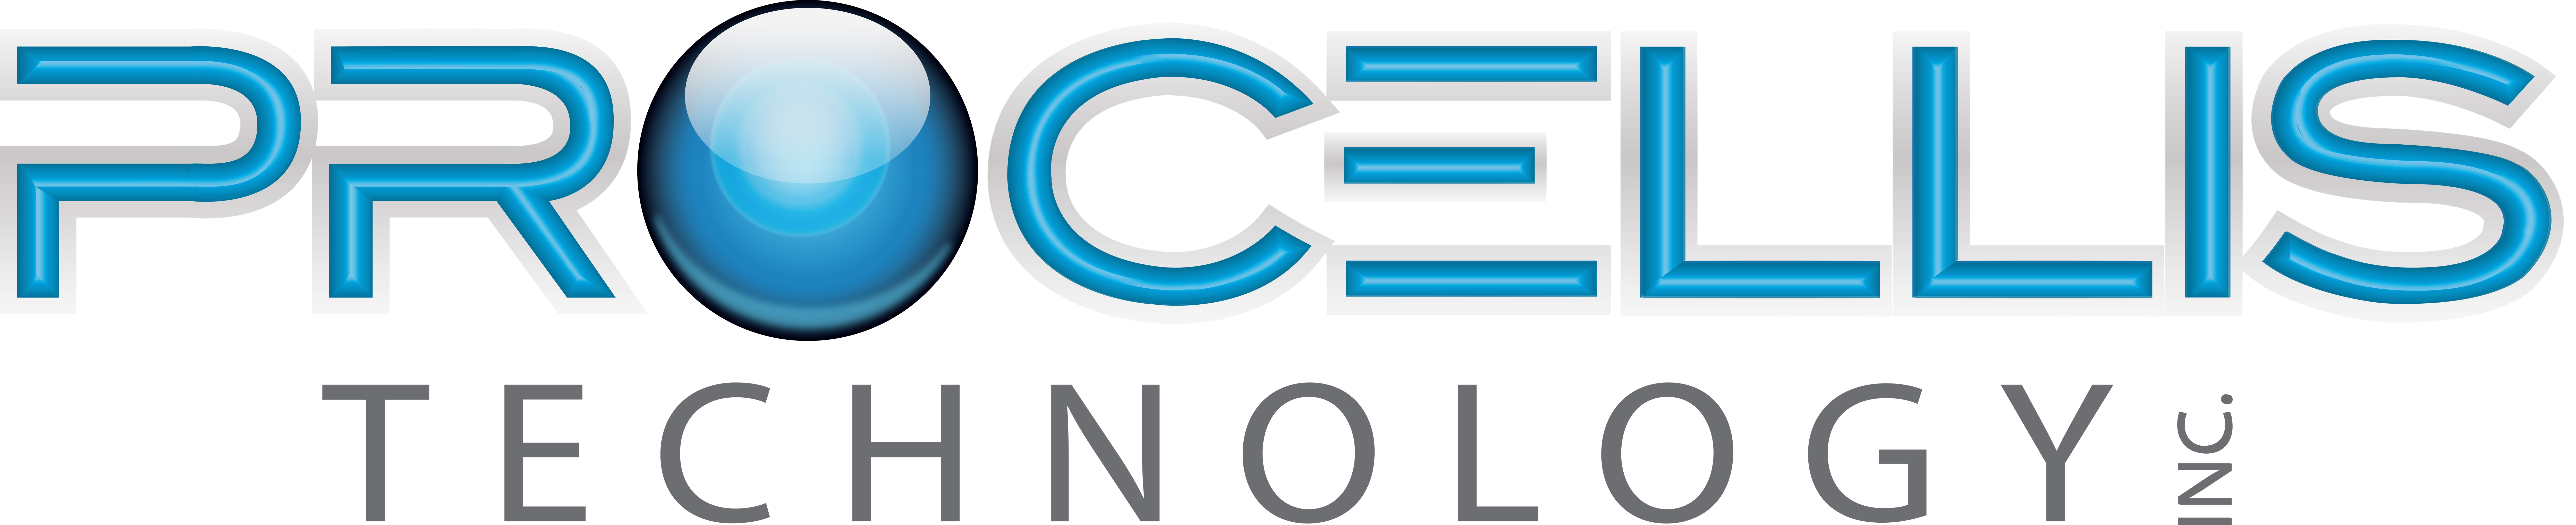 Procellis-logo